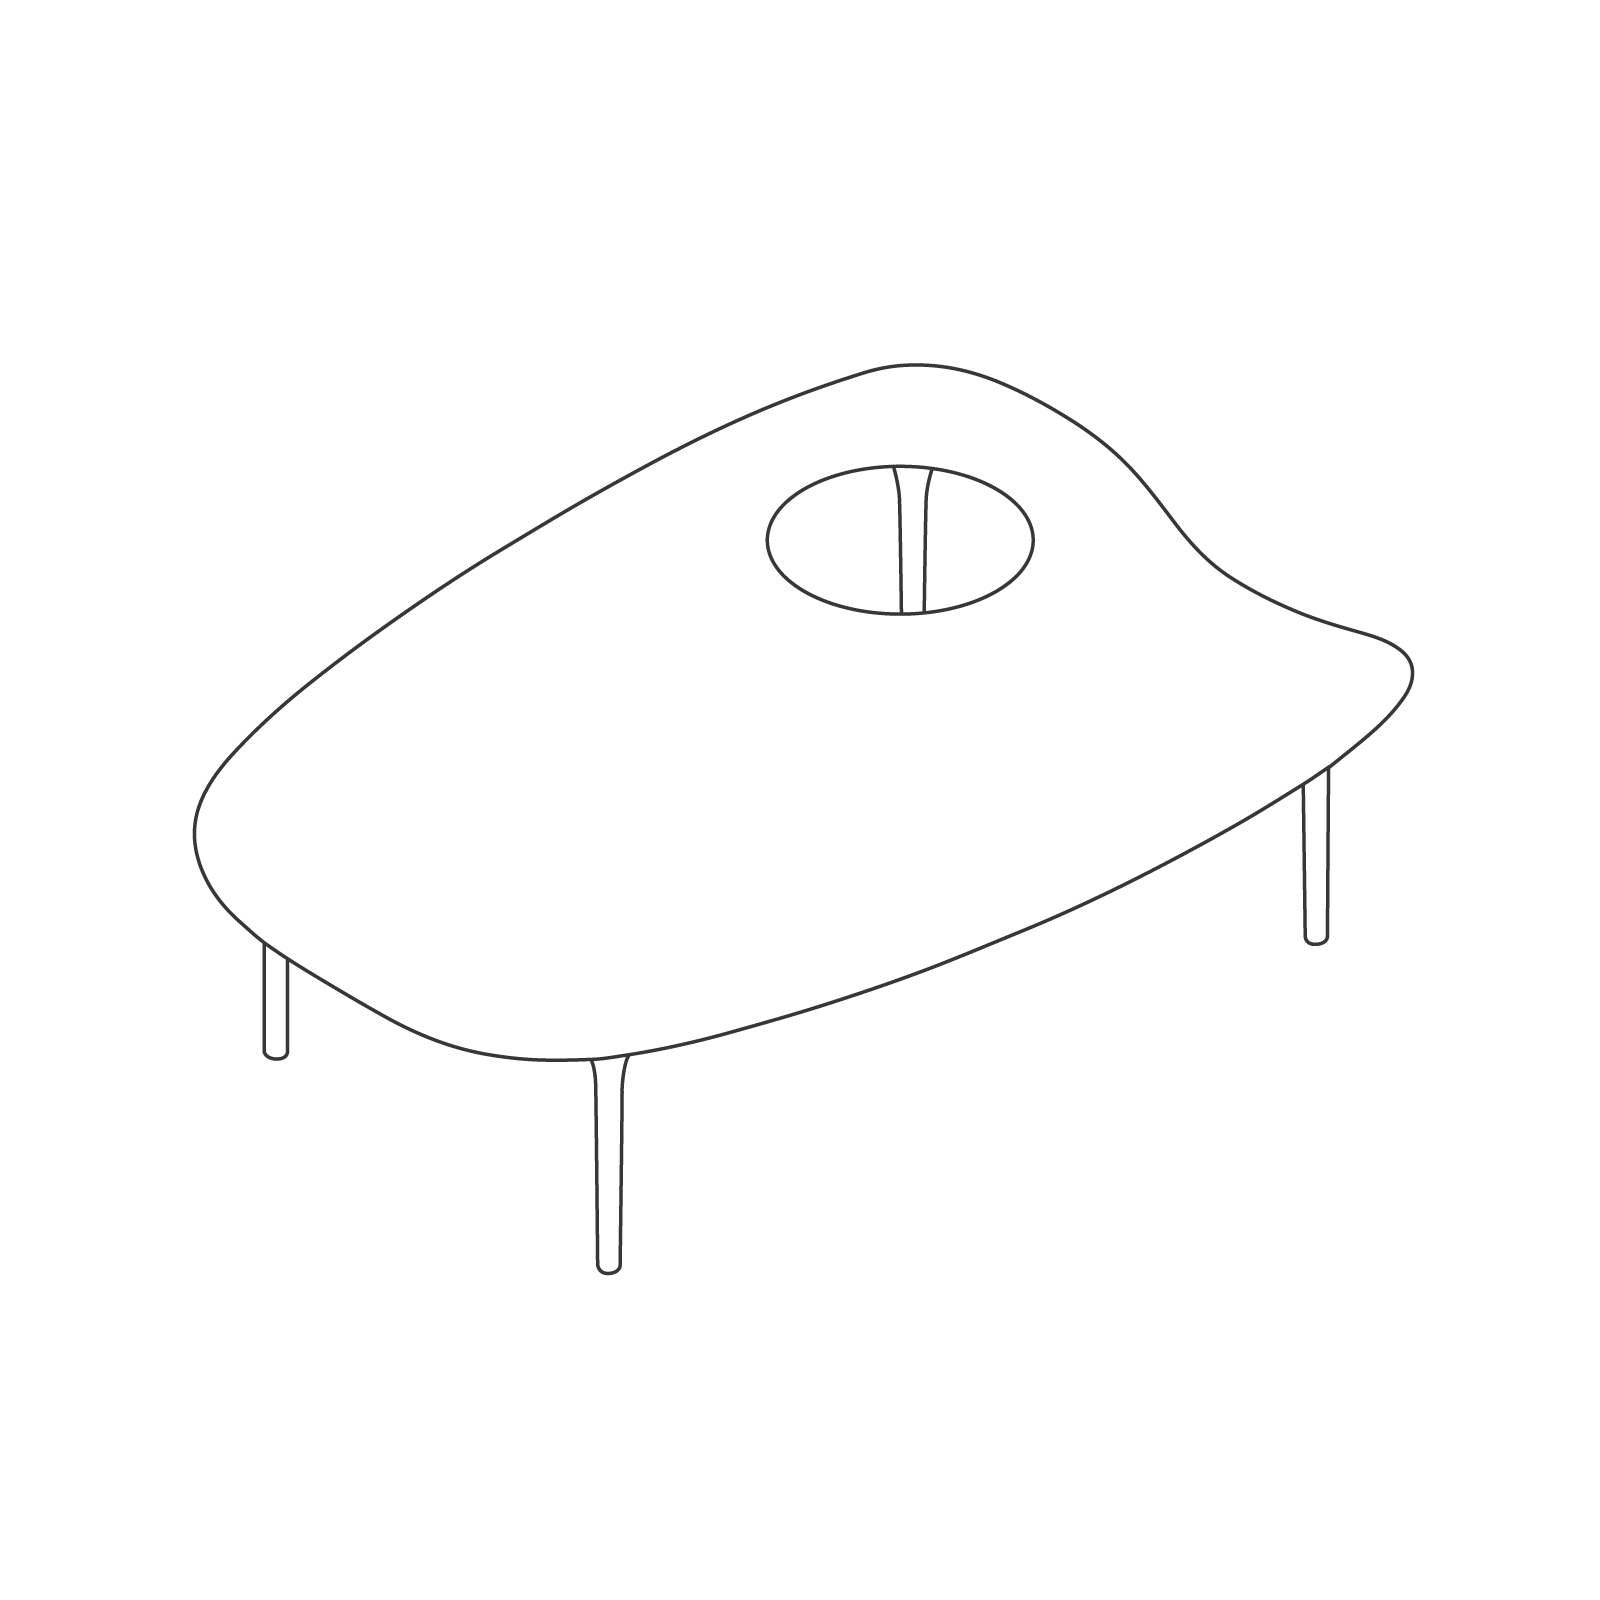 ラインドローイング - サイクレイド テーブル – 低